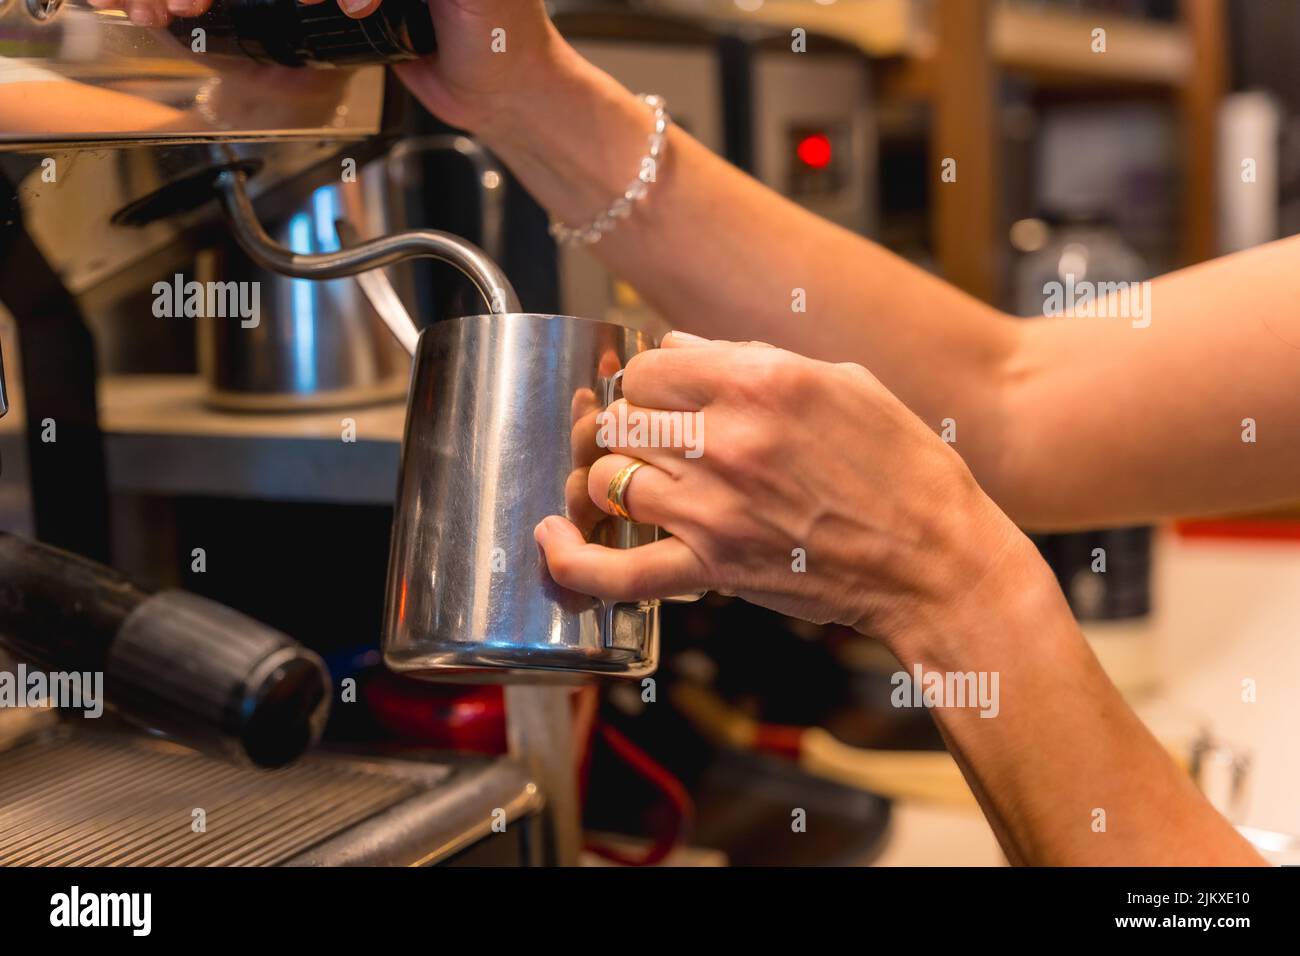 Une serveuse de cafétéria méconnaissable prépare du café dans une machine à café Banque D'Images